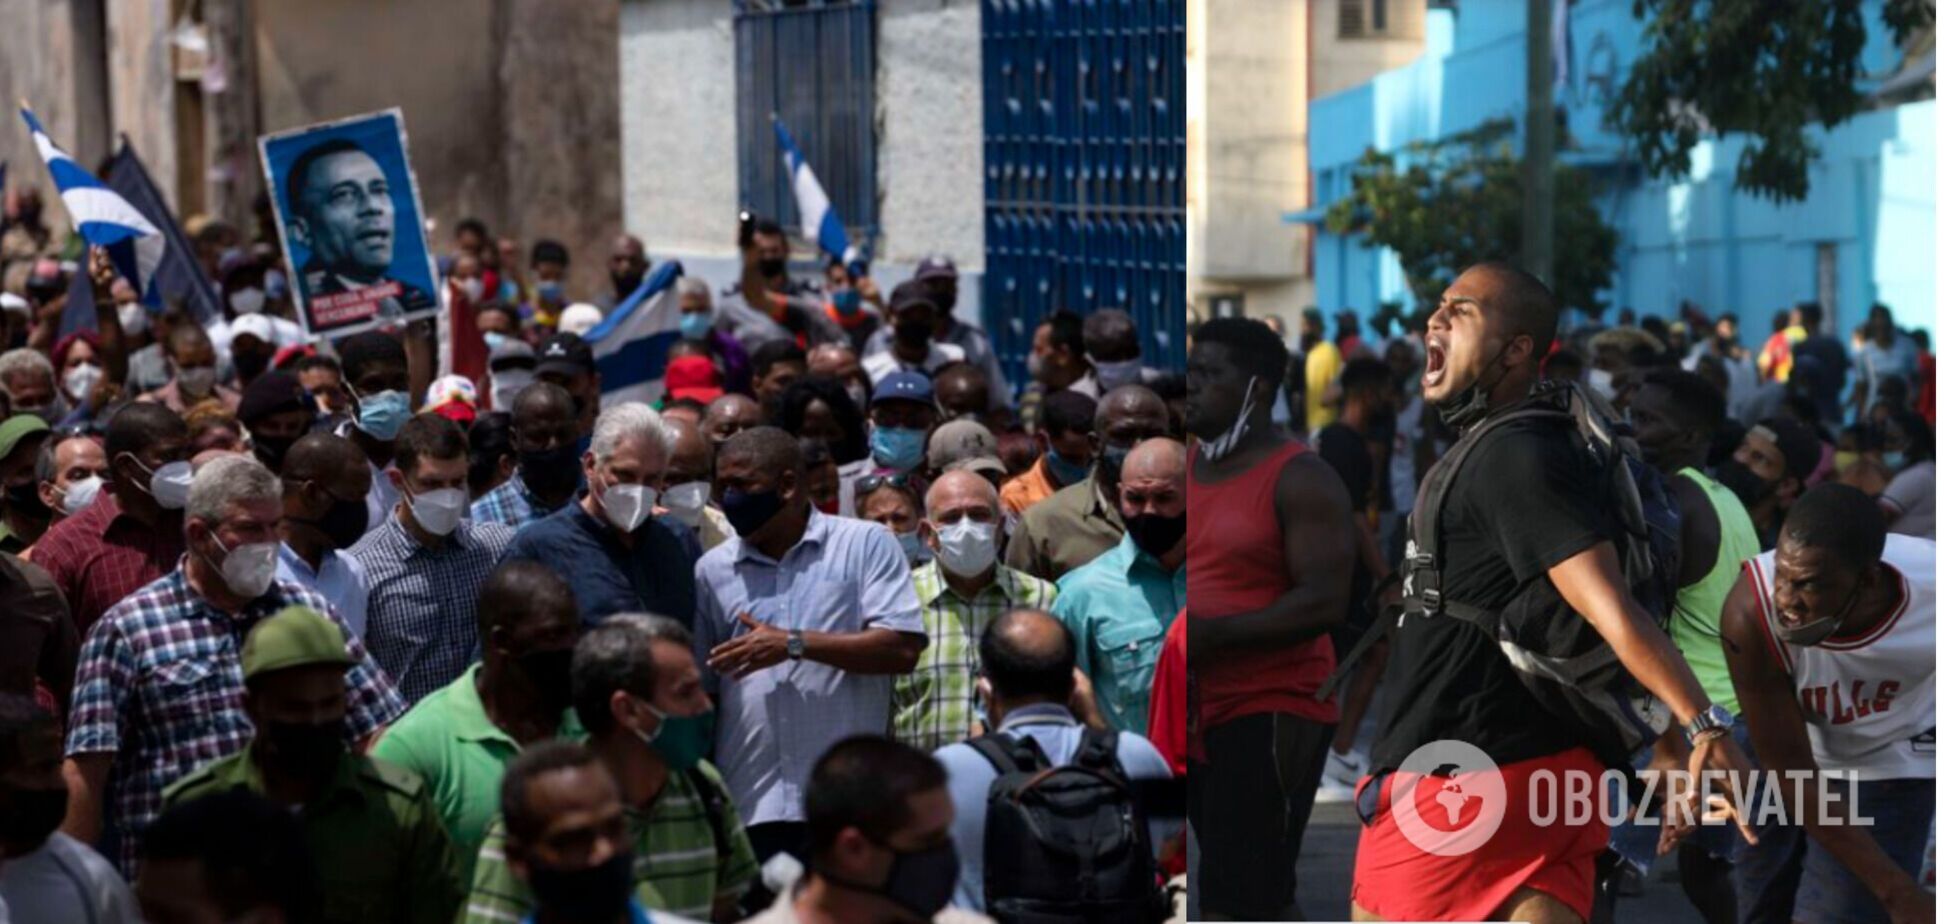 На Кубе вспыхнули антиправительственные протесты из-за продовольственного кризиса. Фото